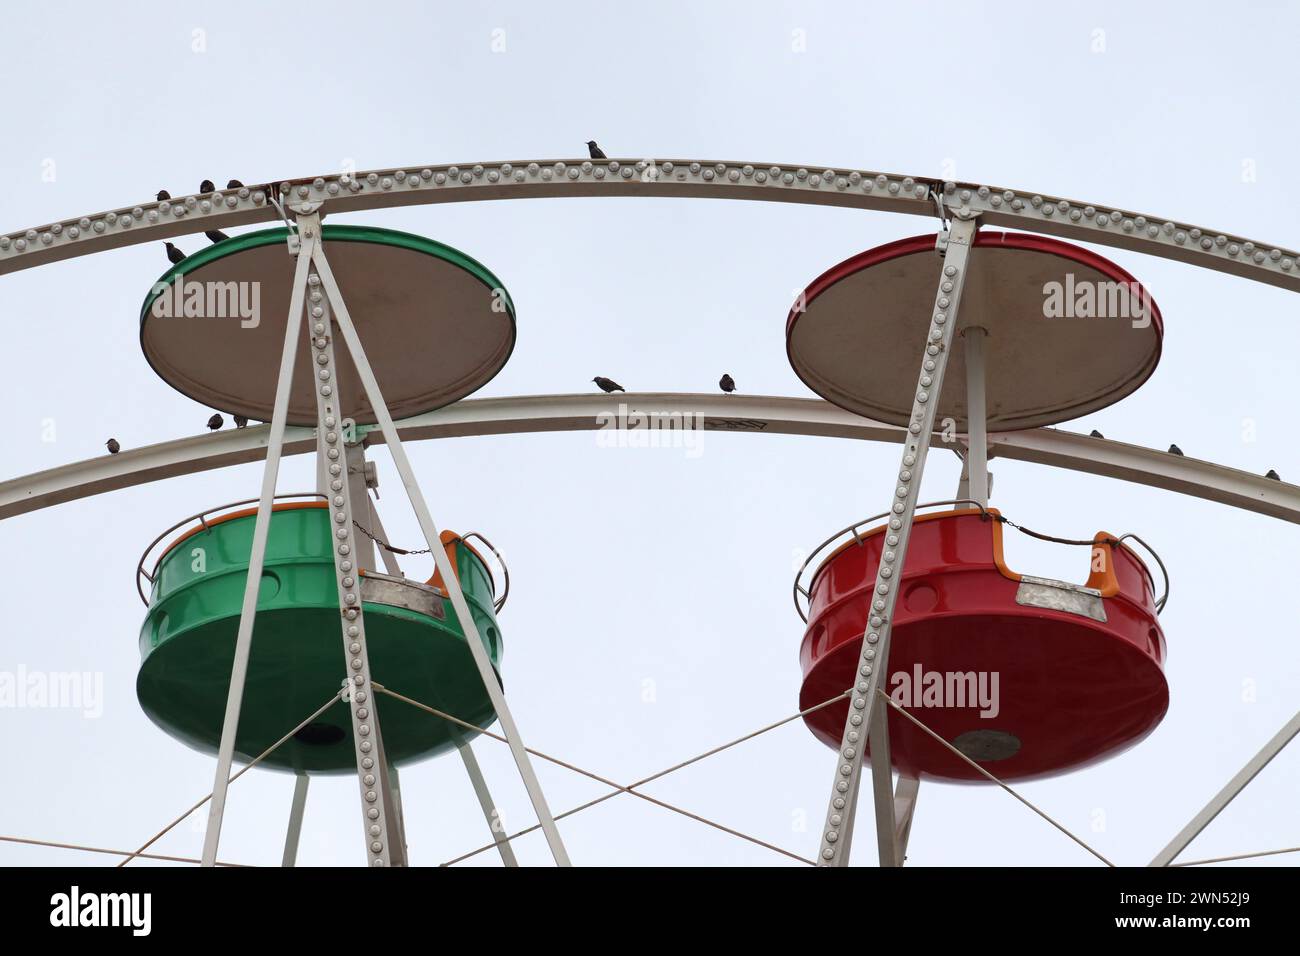 Sinfonia aerea. Due gondole, colori verde e rosso e uccelli nel parco divertimenti della ruota panoramica. Foto Stock